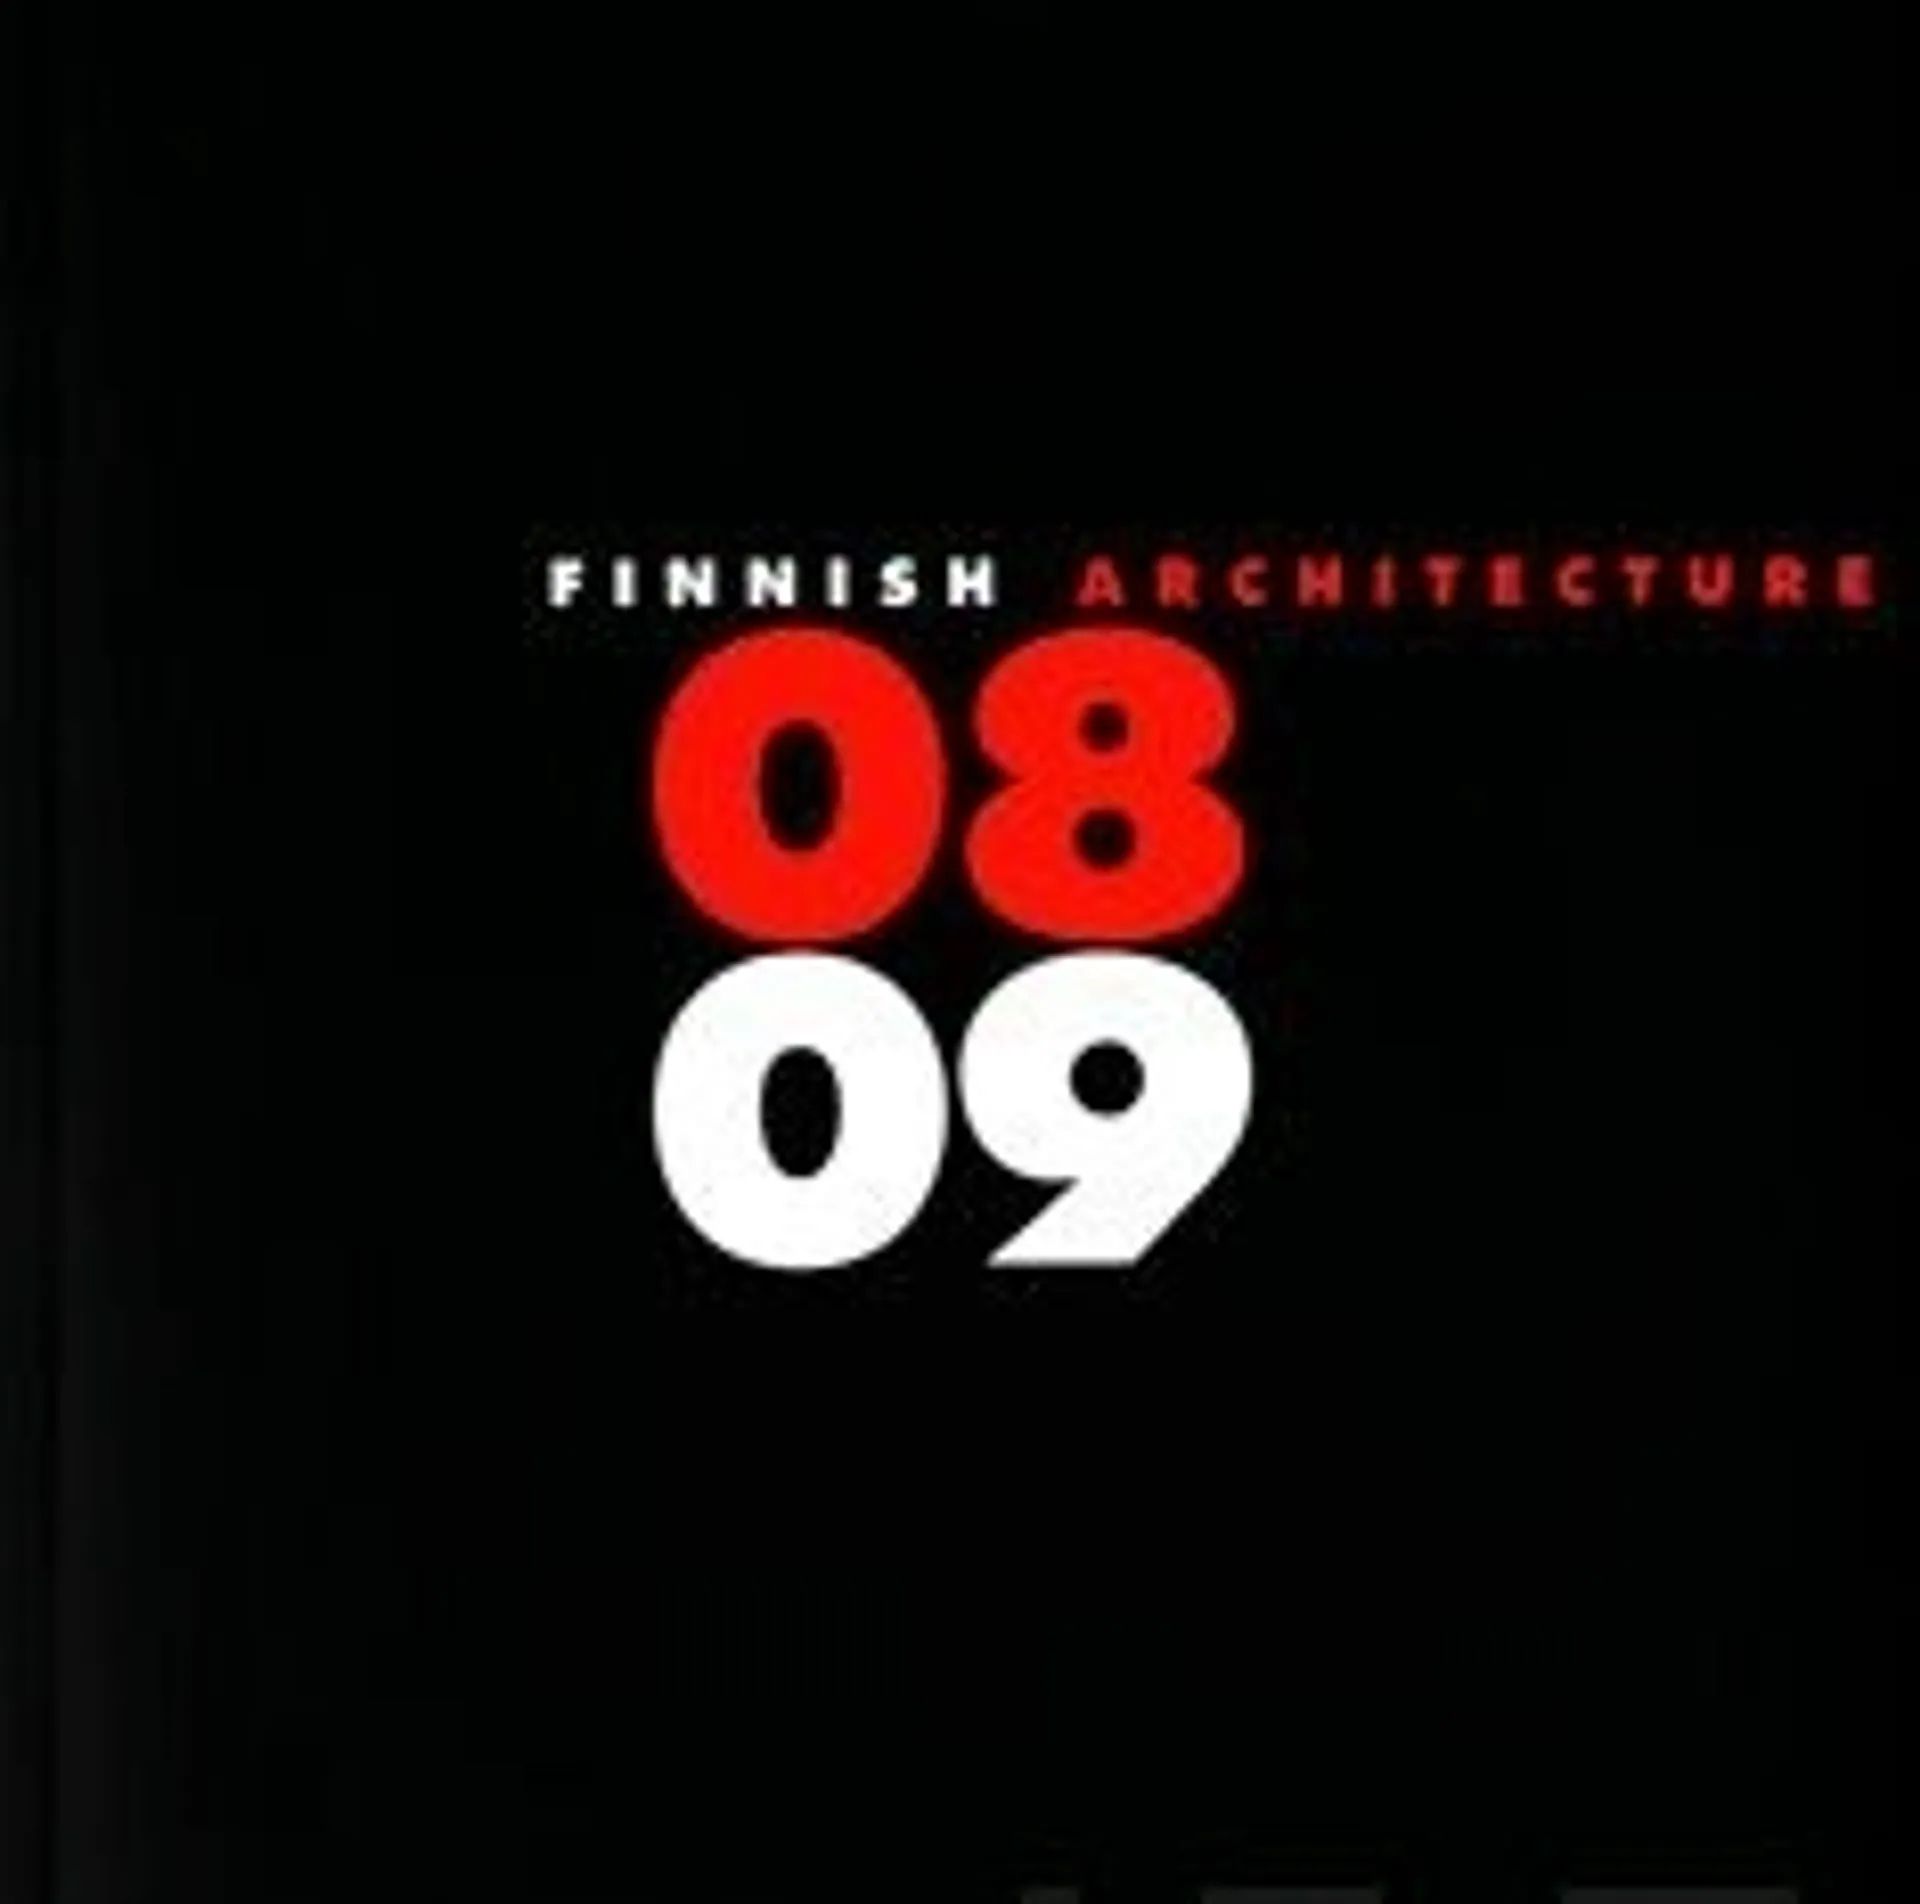 Finnish architecture 08-09